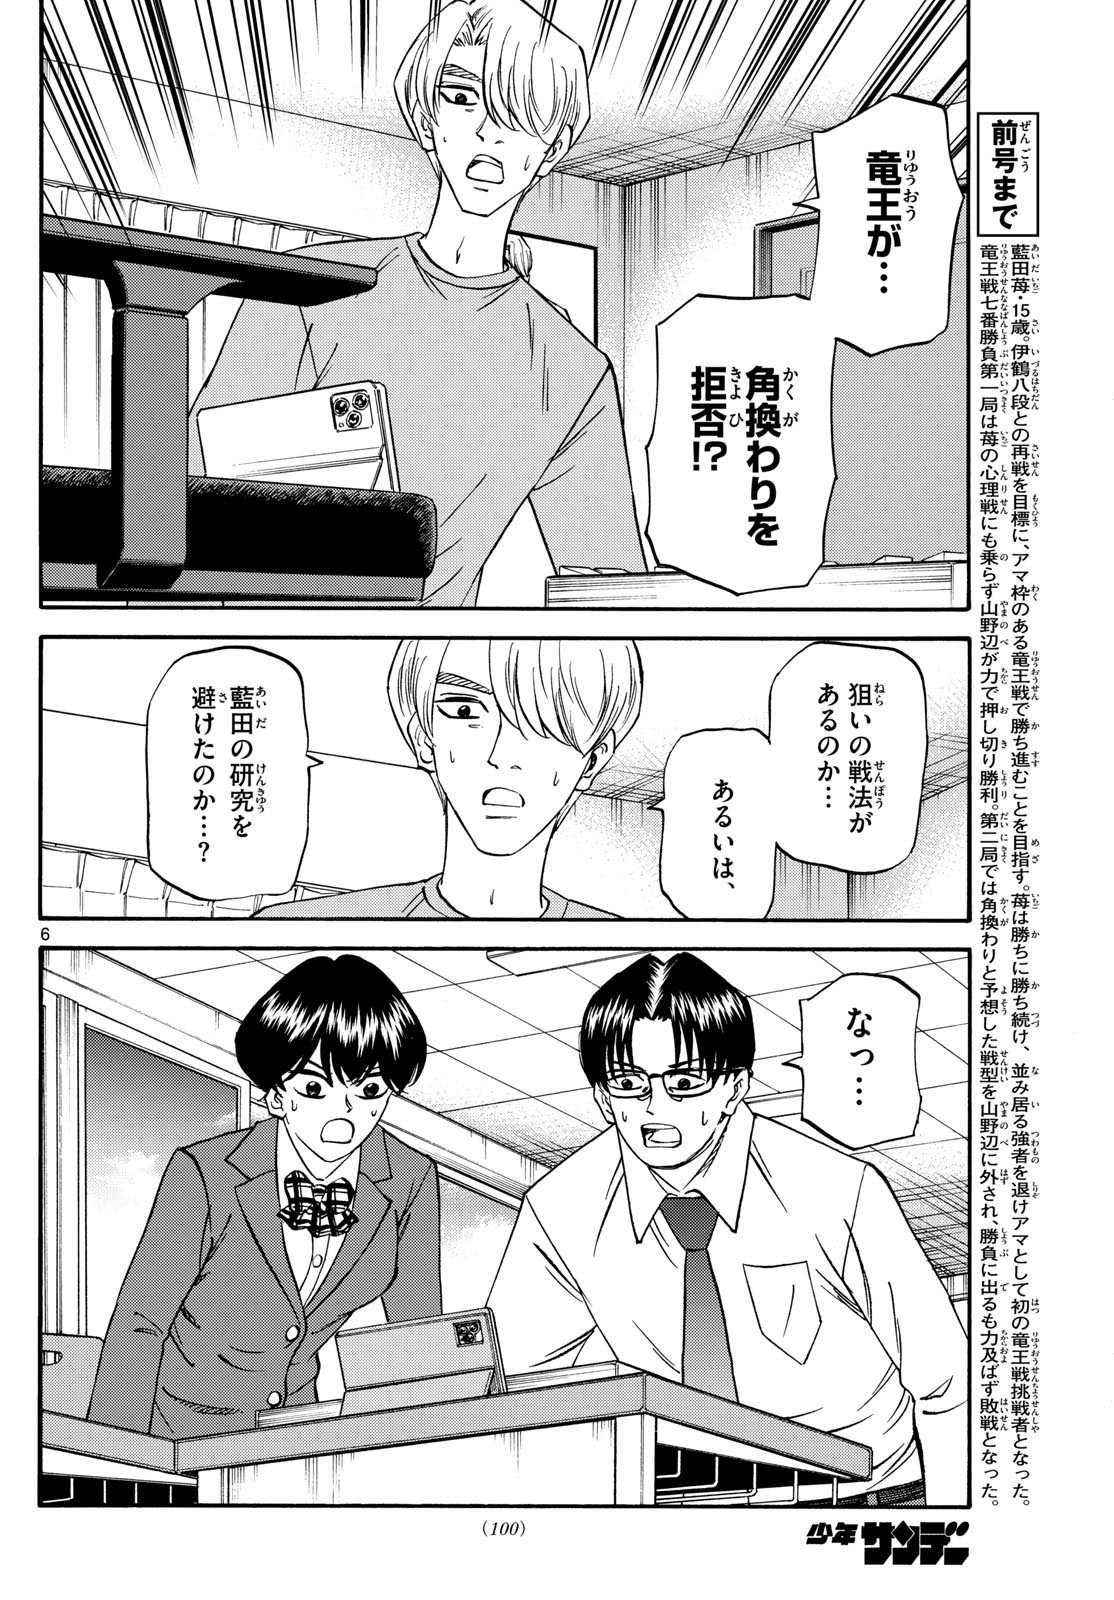 Ryu-to-Ichigo - Chapter 159 - Page 6